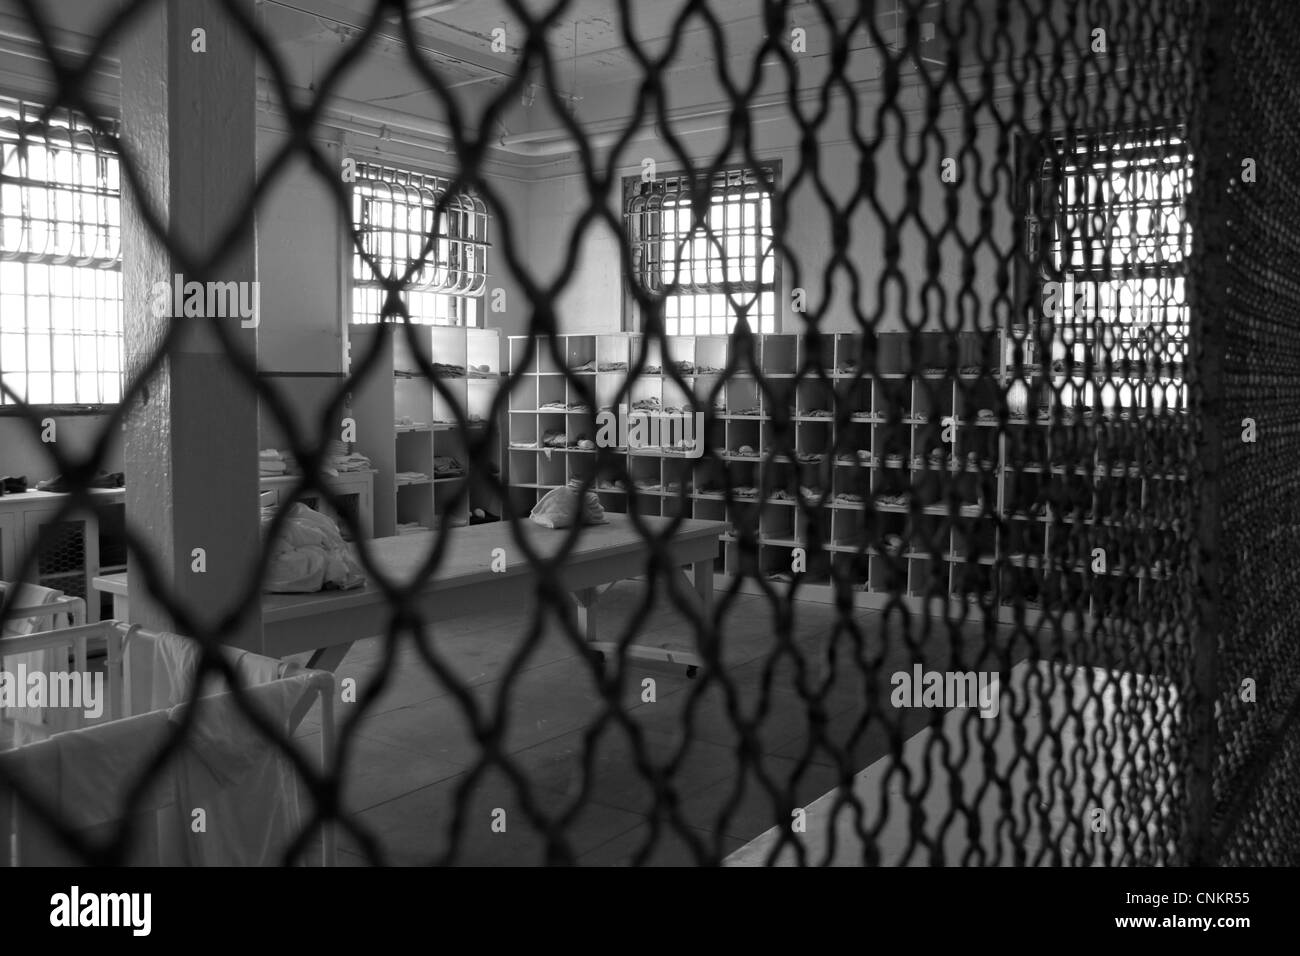 Gefängnis Alcatraz, San Francisco, Amerika, mesh-Zaun. schwarz / weiß, Vintage Umkleideraum, schwarz / weiß Stockfoto